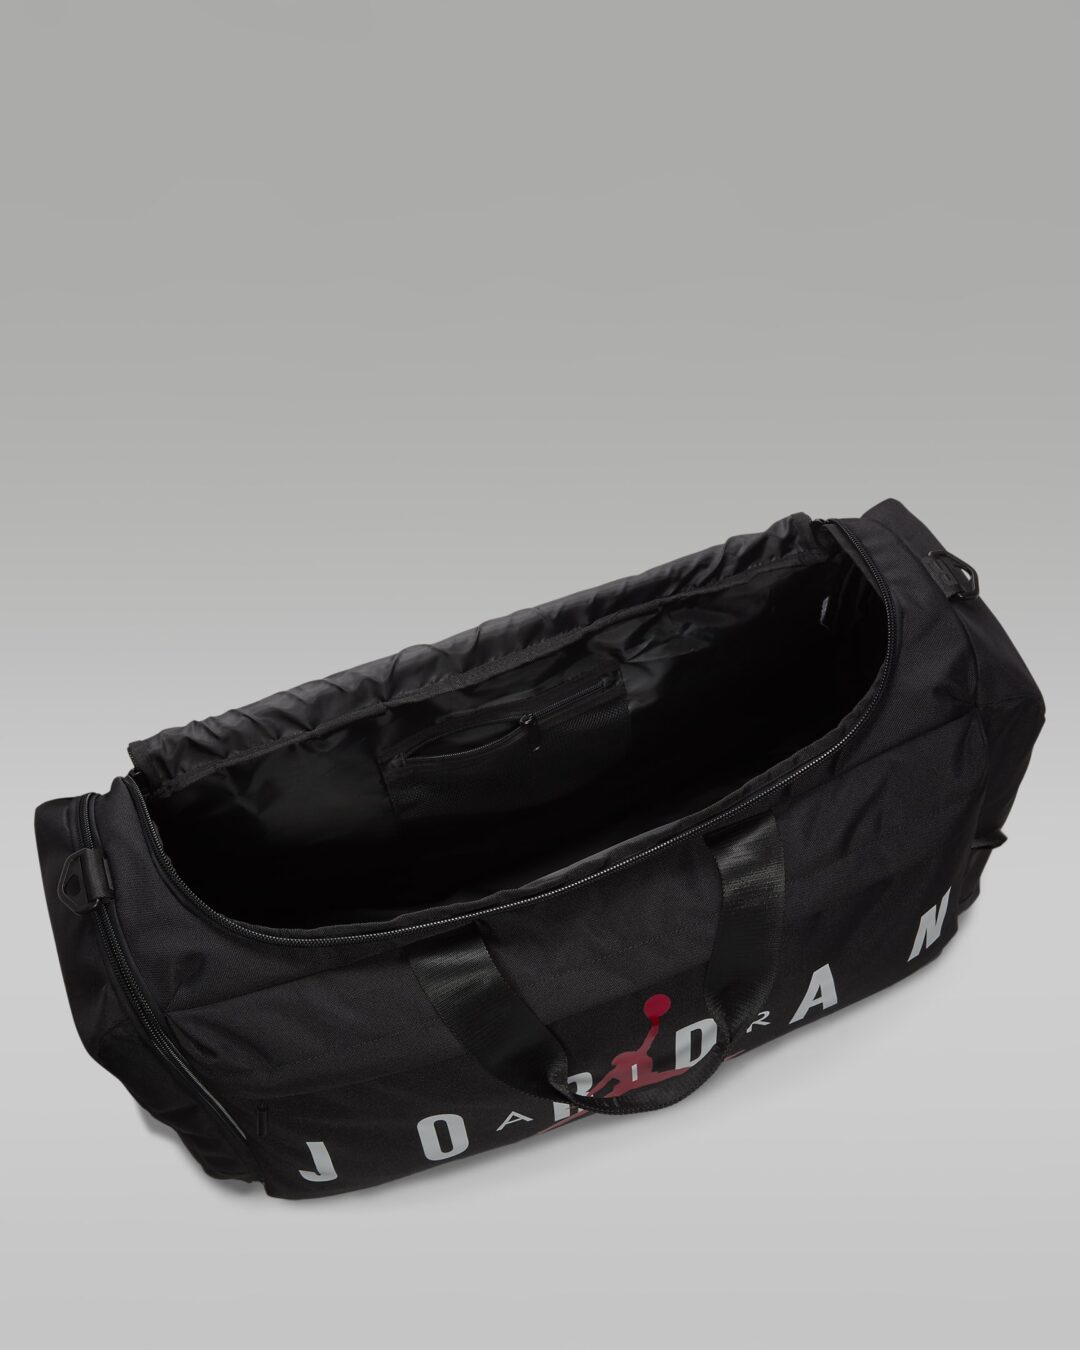 一泊旅行用に、試合用に最適な「ナイキ ジョーダン ベロシティ ダッフルバッグ」が発売 (NIKE JORDAN Velocity duffel bag) [HF7295-010/HF7295-687/HF7294-010/HF7294-687]